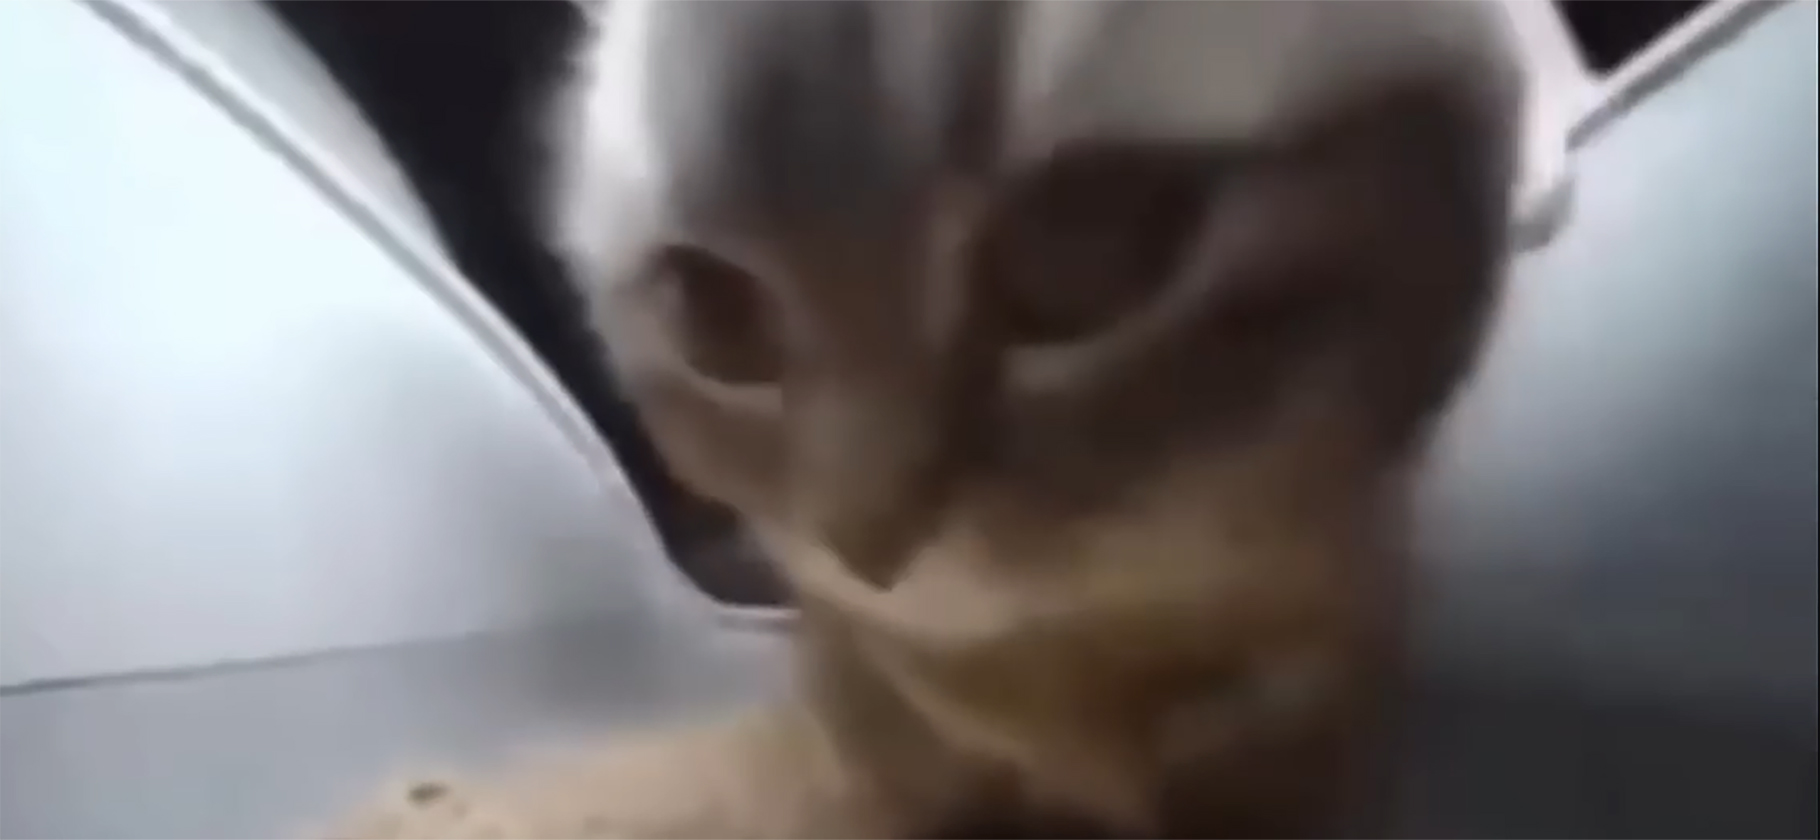 «Чипи-чипи чапа-чапа»: откуда взялся танцующий в лотке кот и как он стал вирусным мемом